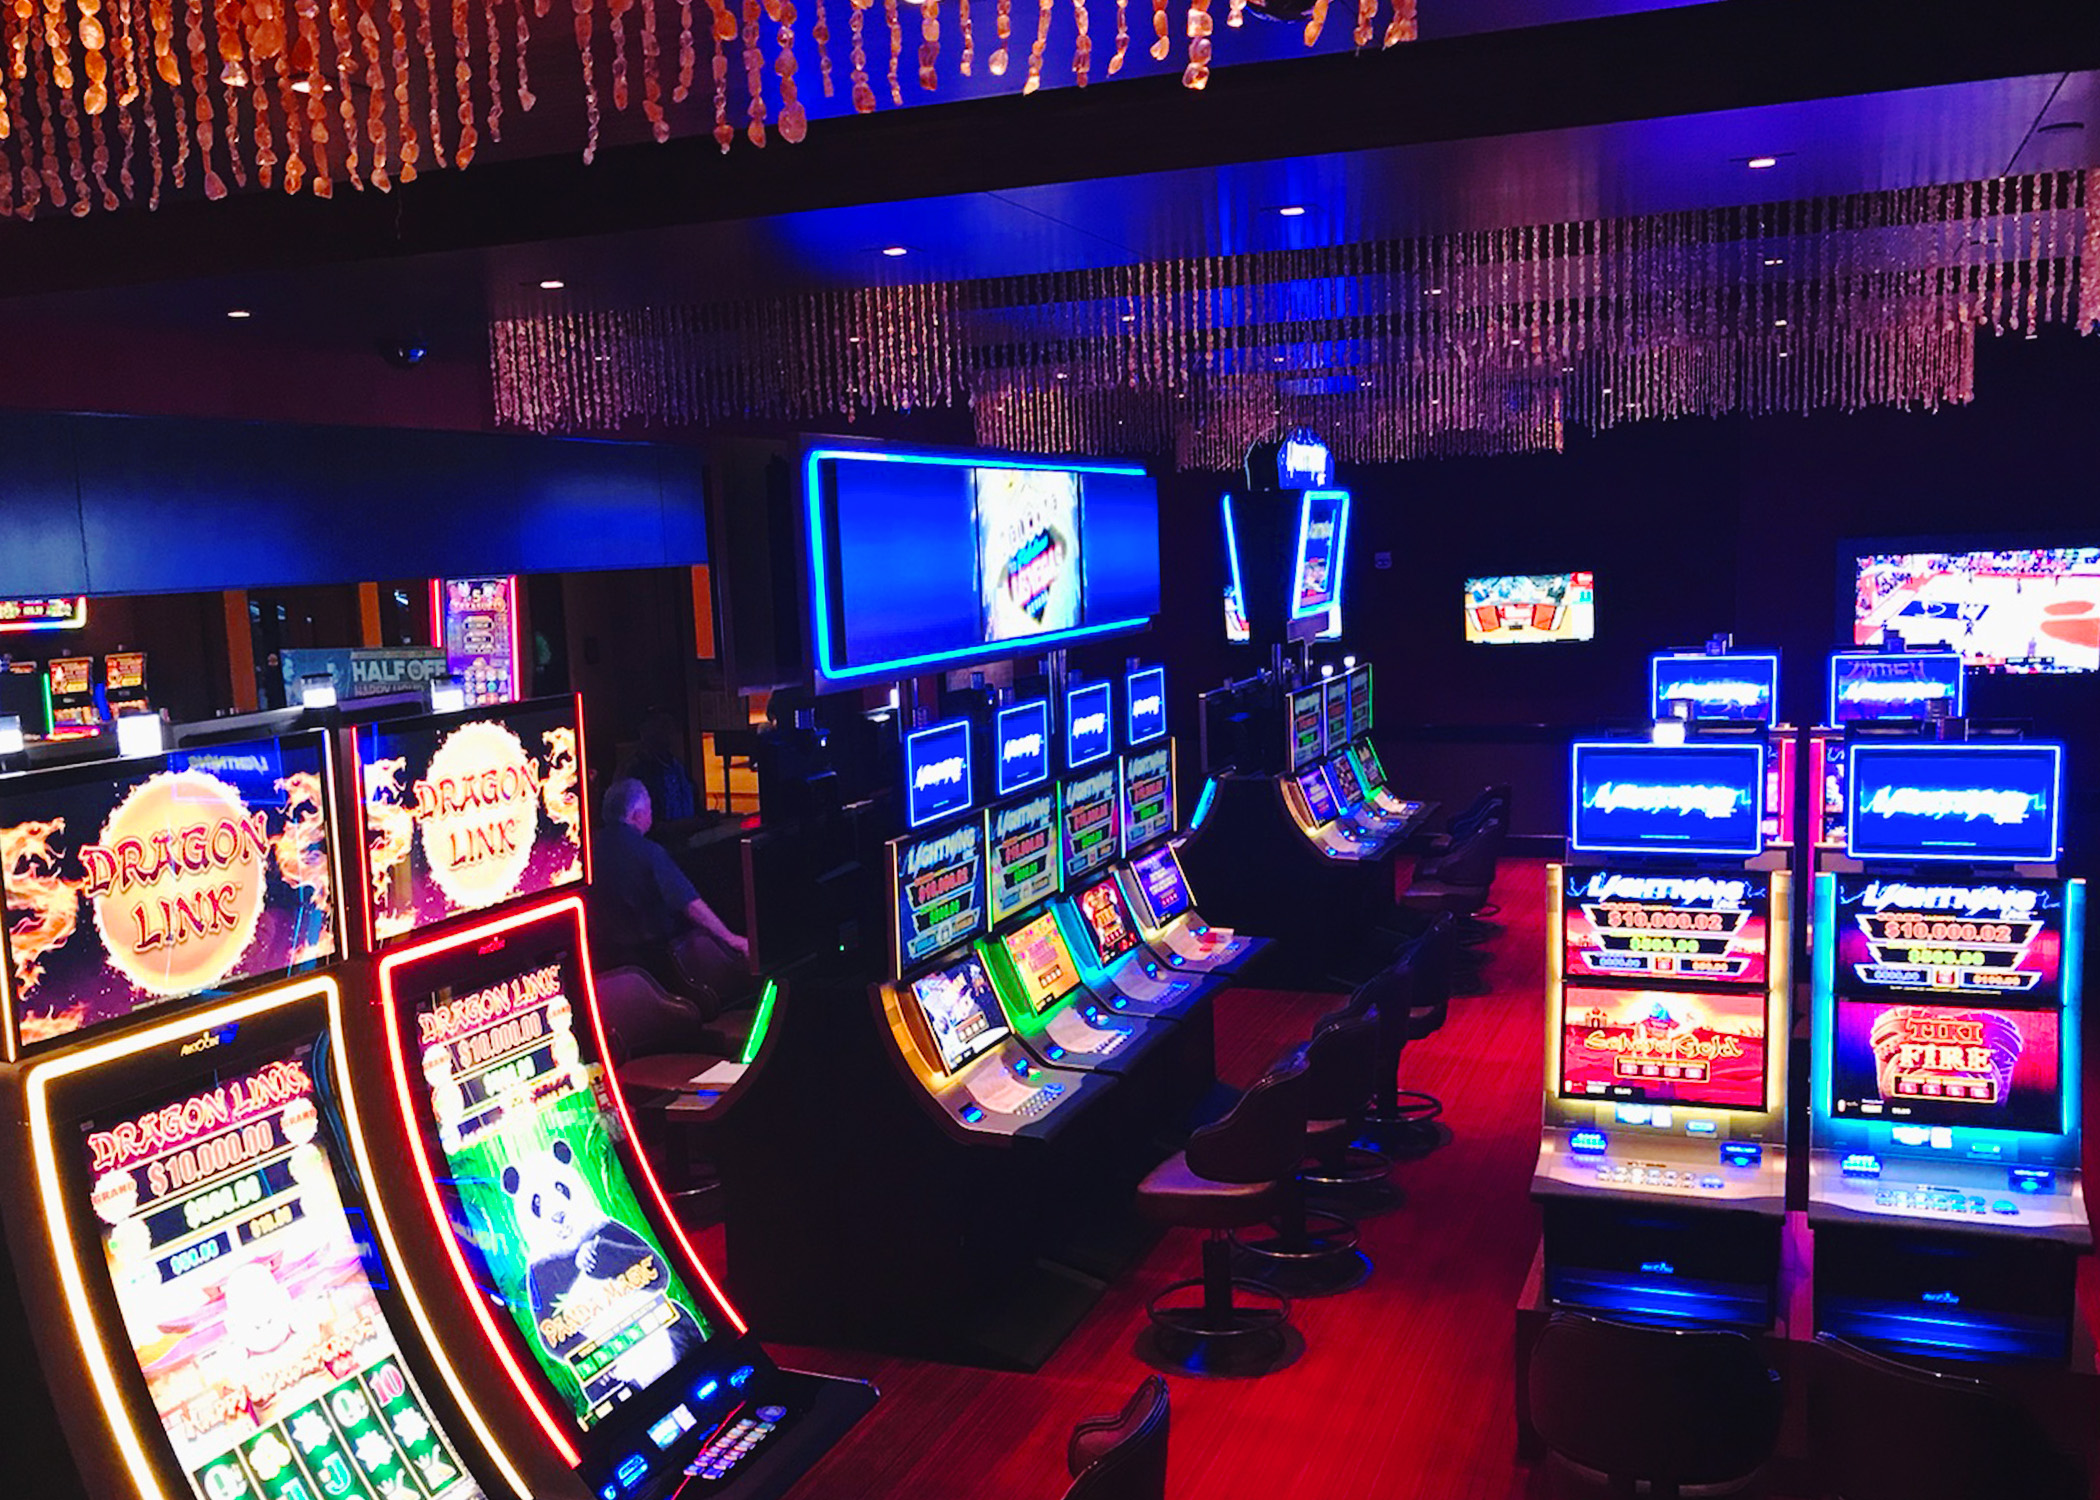 Austin Powers Free Slot Machine Casino